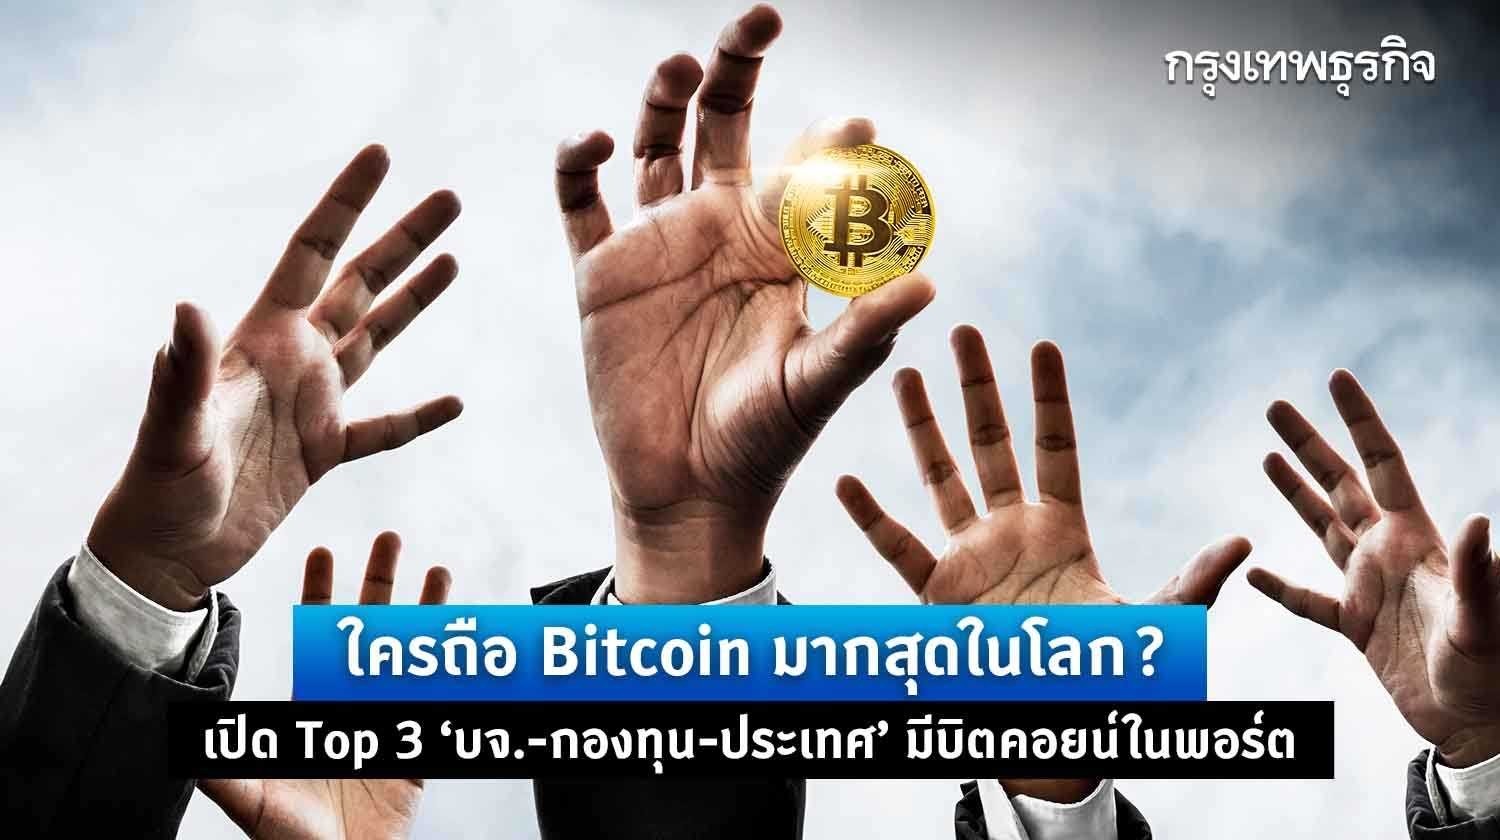 ใครถือ bitcoin มากสุดในโลก? เปิด top 3 ’บจ.-กองทุน-ประเทศ‘ มีบิตคอยน์ในพอร์ต